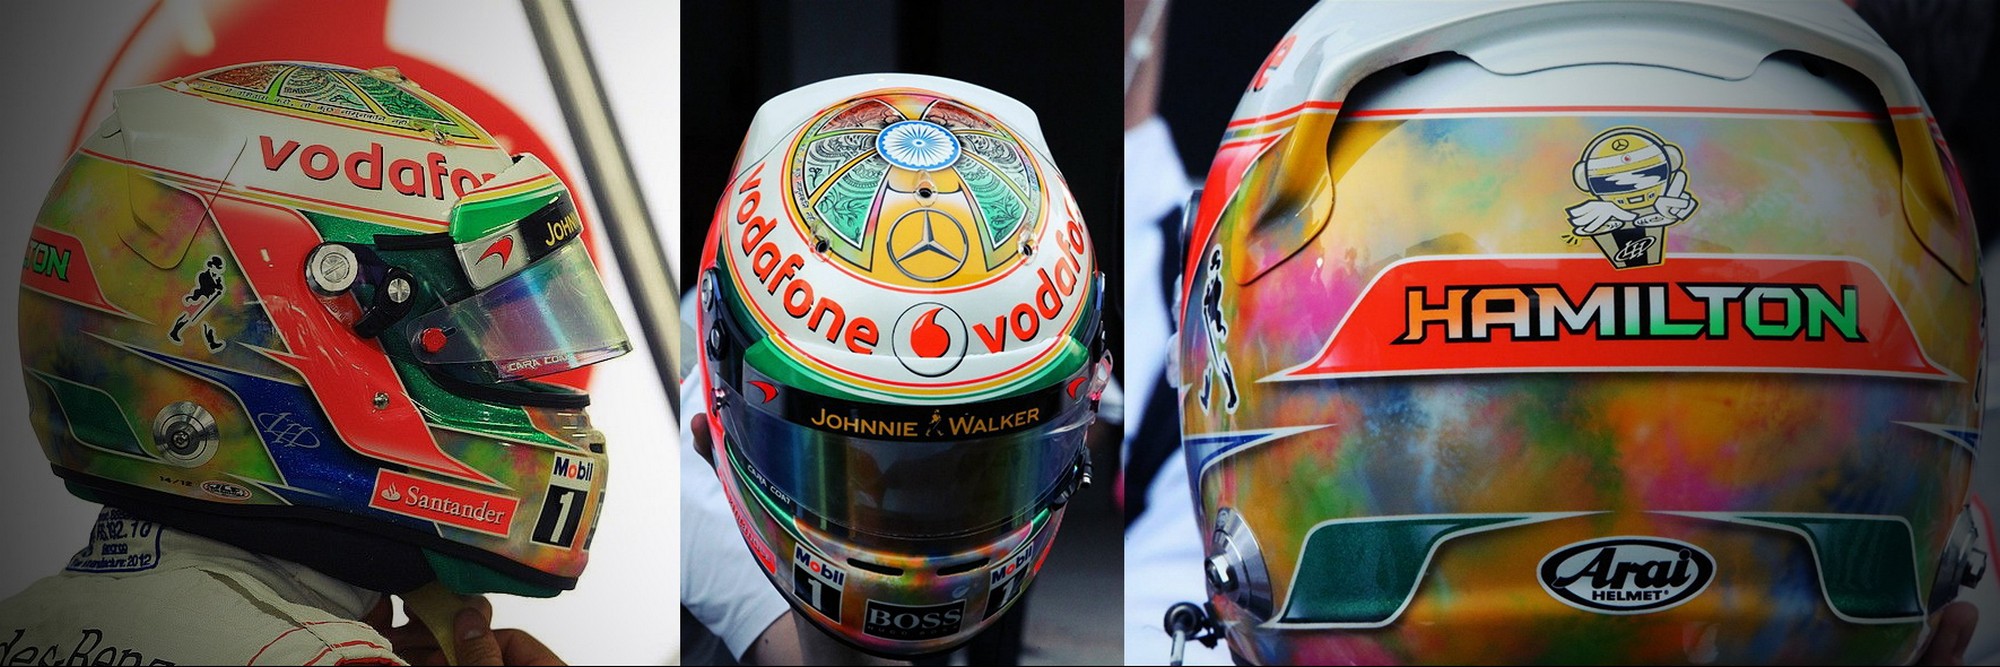 Шлем Льюиса Хэмилтона на Гран-При Индии 2012 | 2012 Indian Grand Prix helmet of Lewis Hamilton